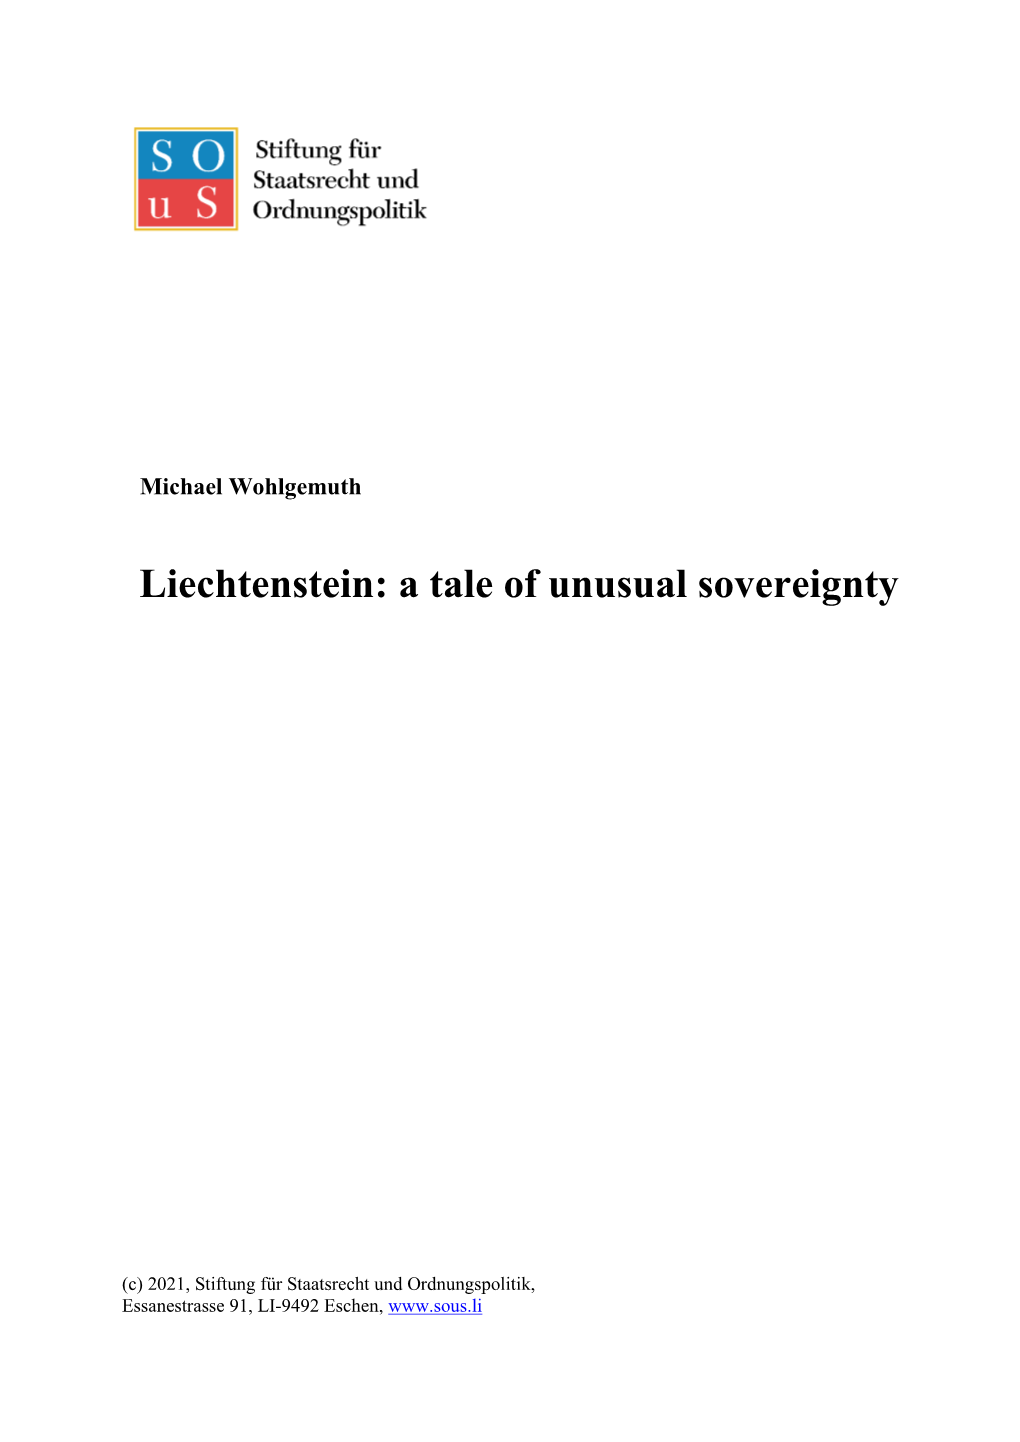 Liechtenstein: a Tale of Unusual Sovereignty